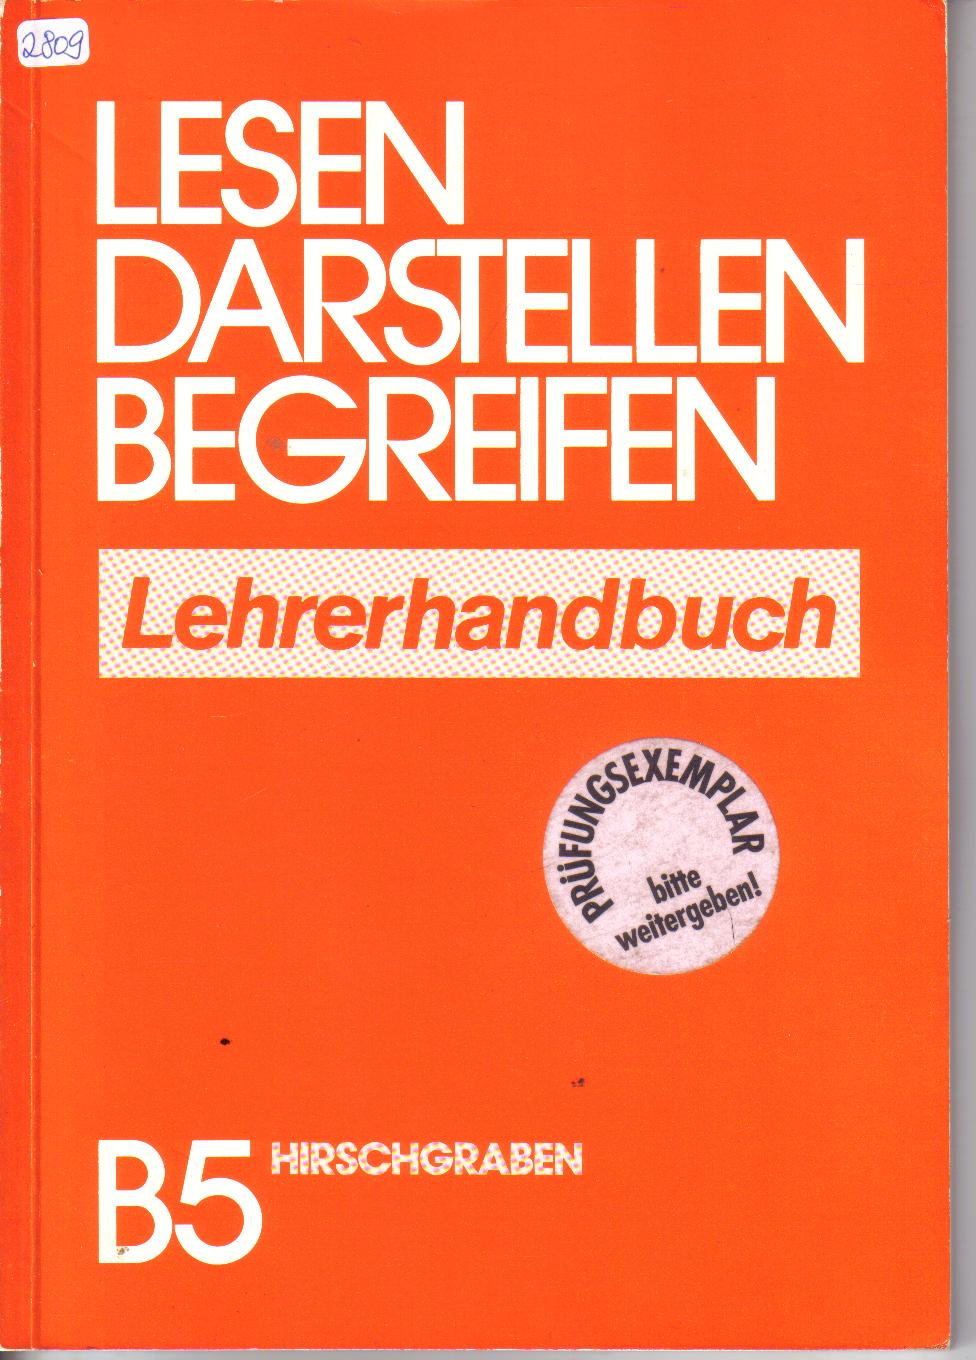 Lesen Darstellen BegreifenLehrerhandbuch ( Pruefungsexemplar) B5 Hirschgraben